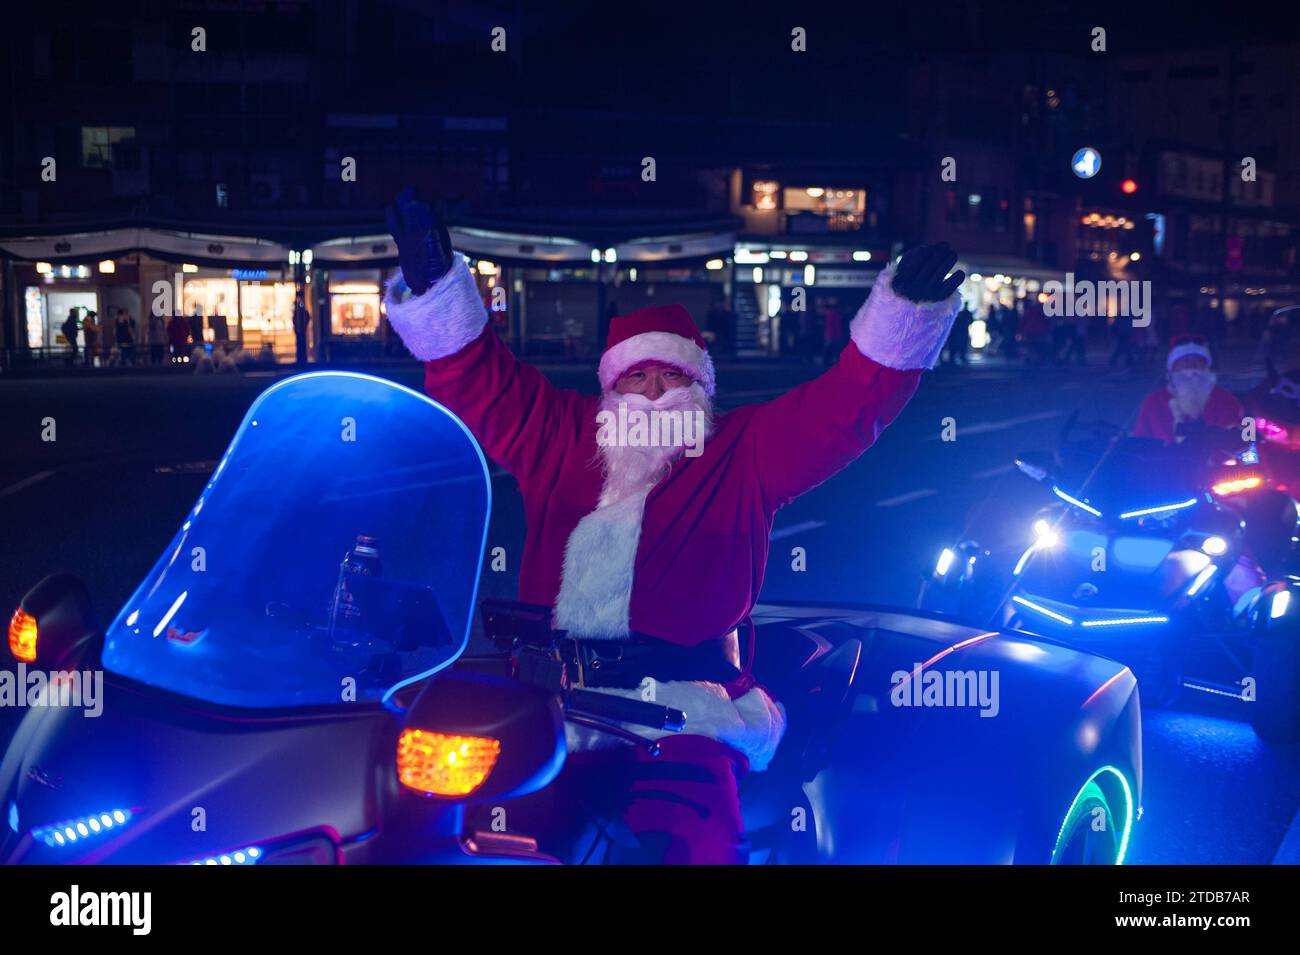 23.12.2017, Kyoto, Japan, Asien - Portraet von einem Motorradfahrer im Weihnachtsmannkostuem. *** 23 12 2017, Kyoto, Japan, Asien Porträt eines Motorradfahrers im Weihnachtsmannskostüm Stockfoto